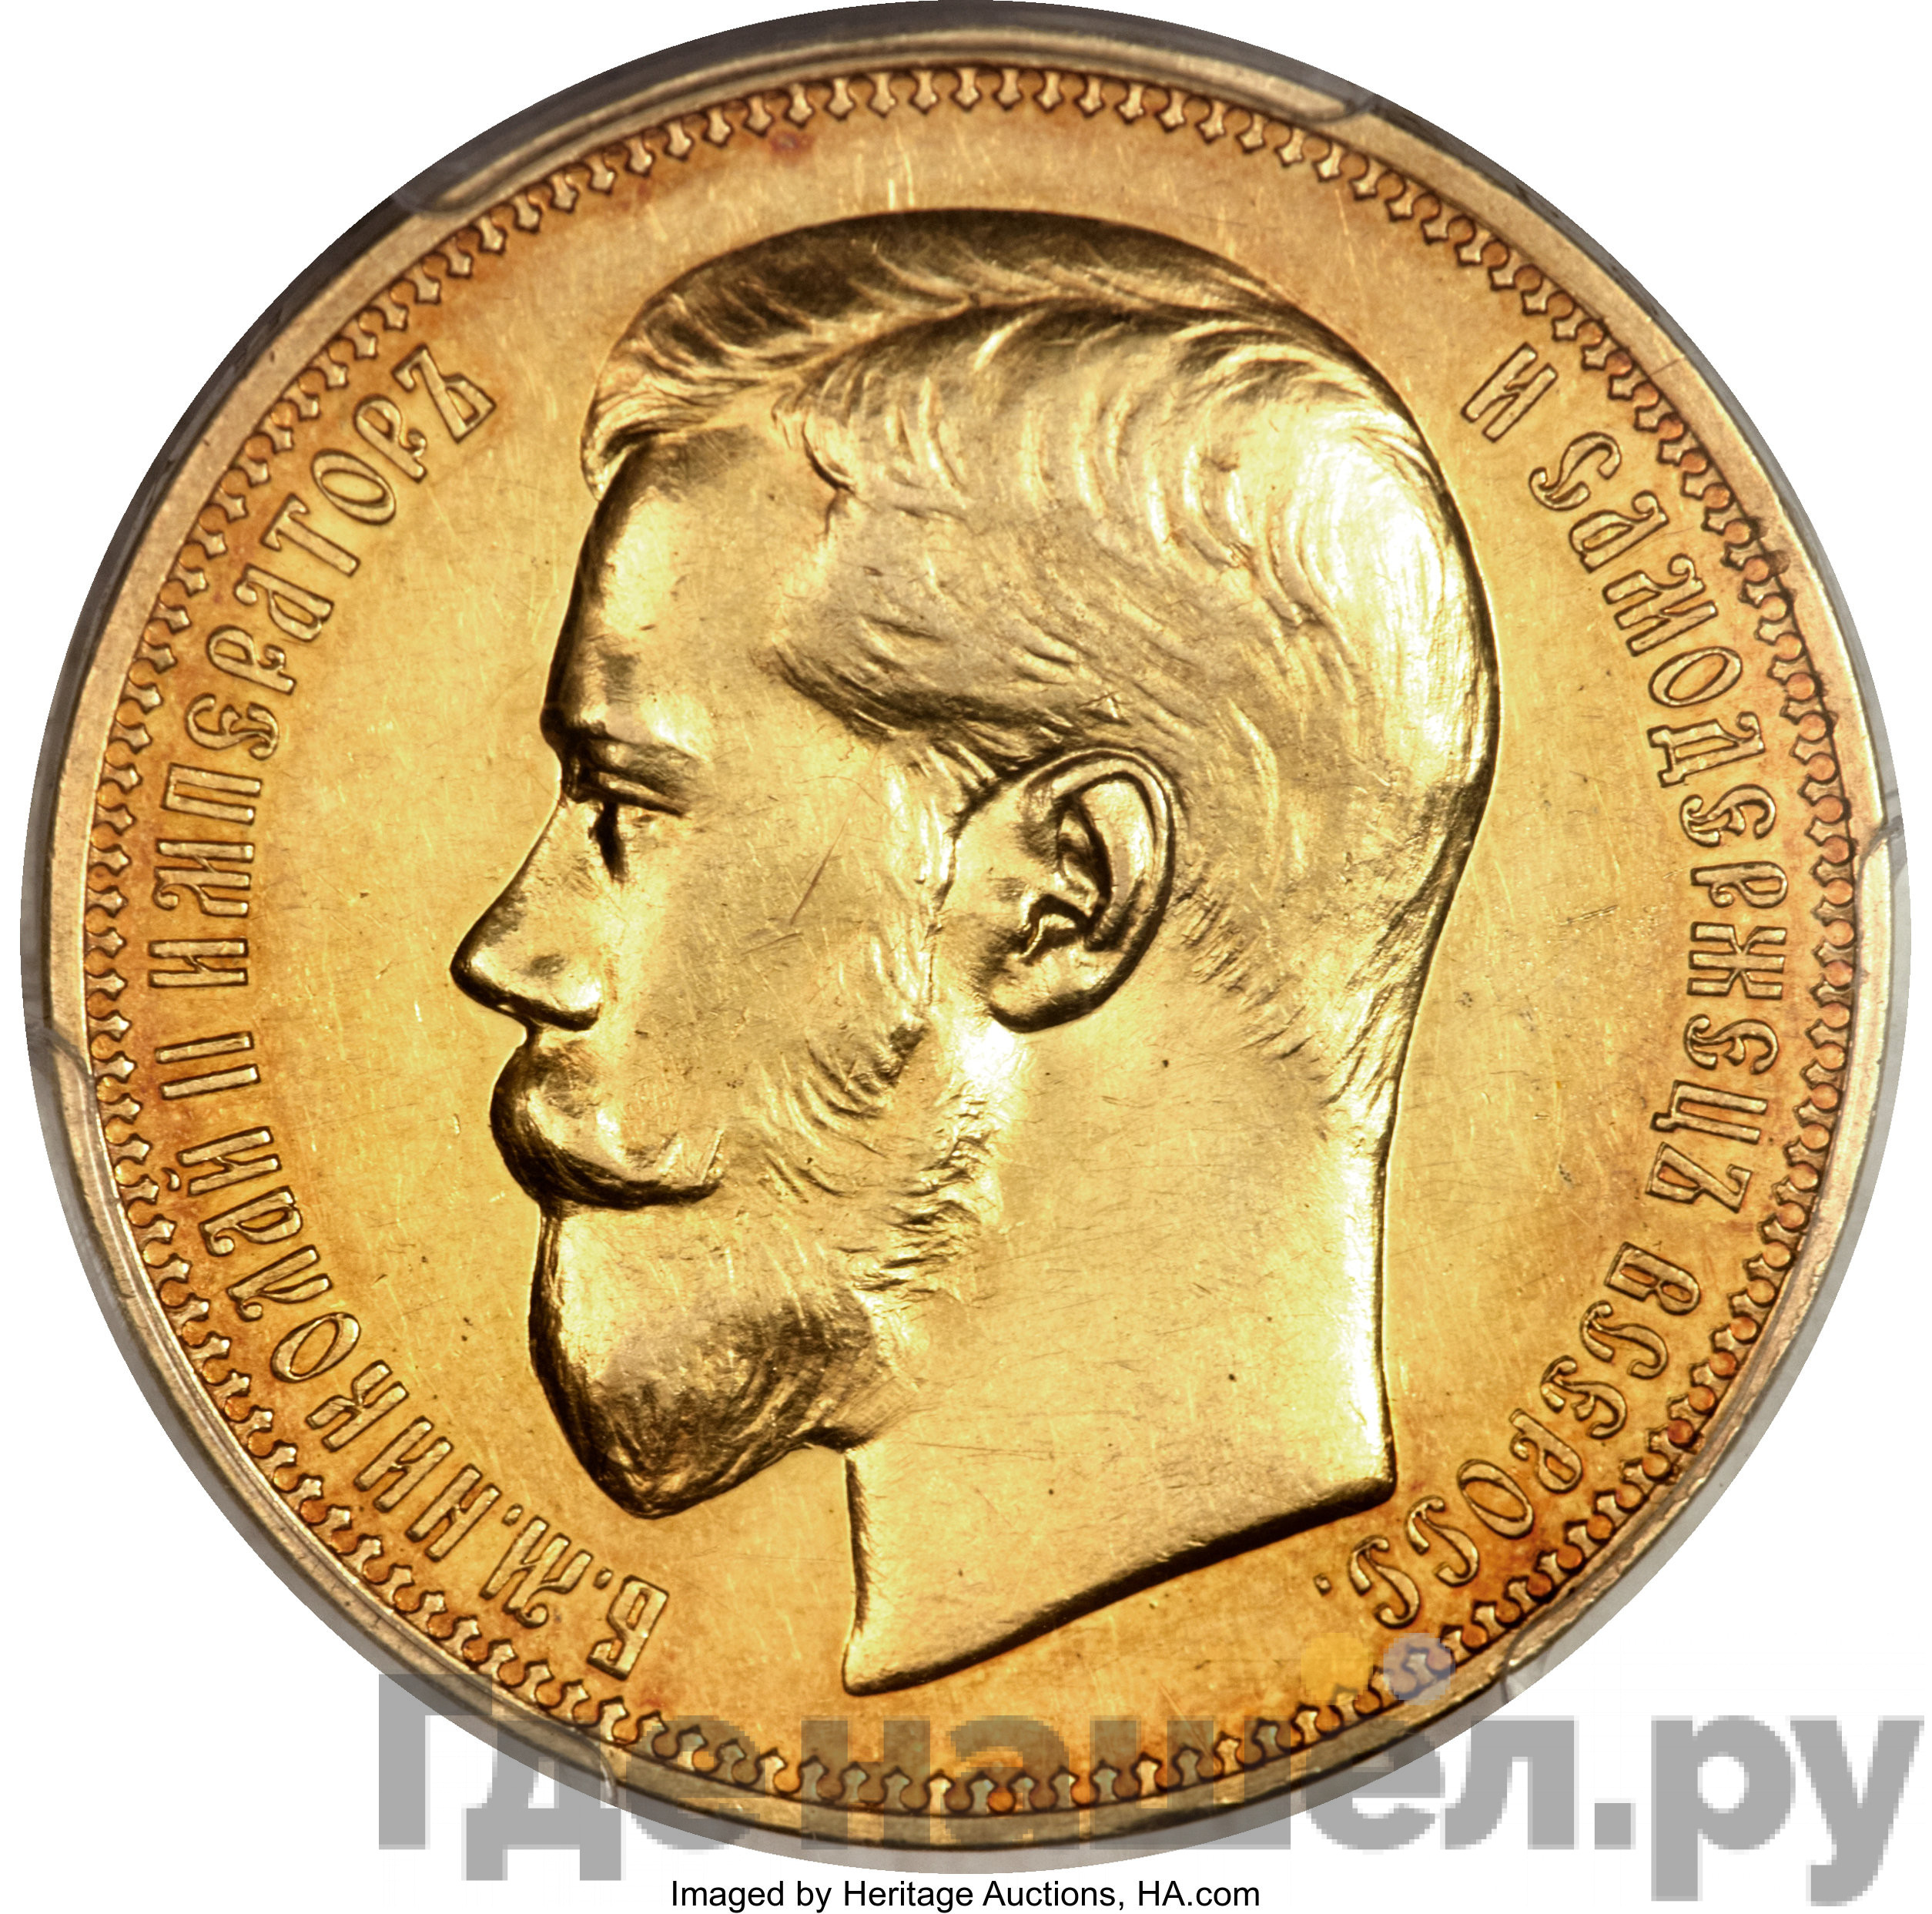 2 1/2 империала - 25 рублей 1896 года * В память коронации Николая 2